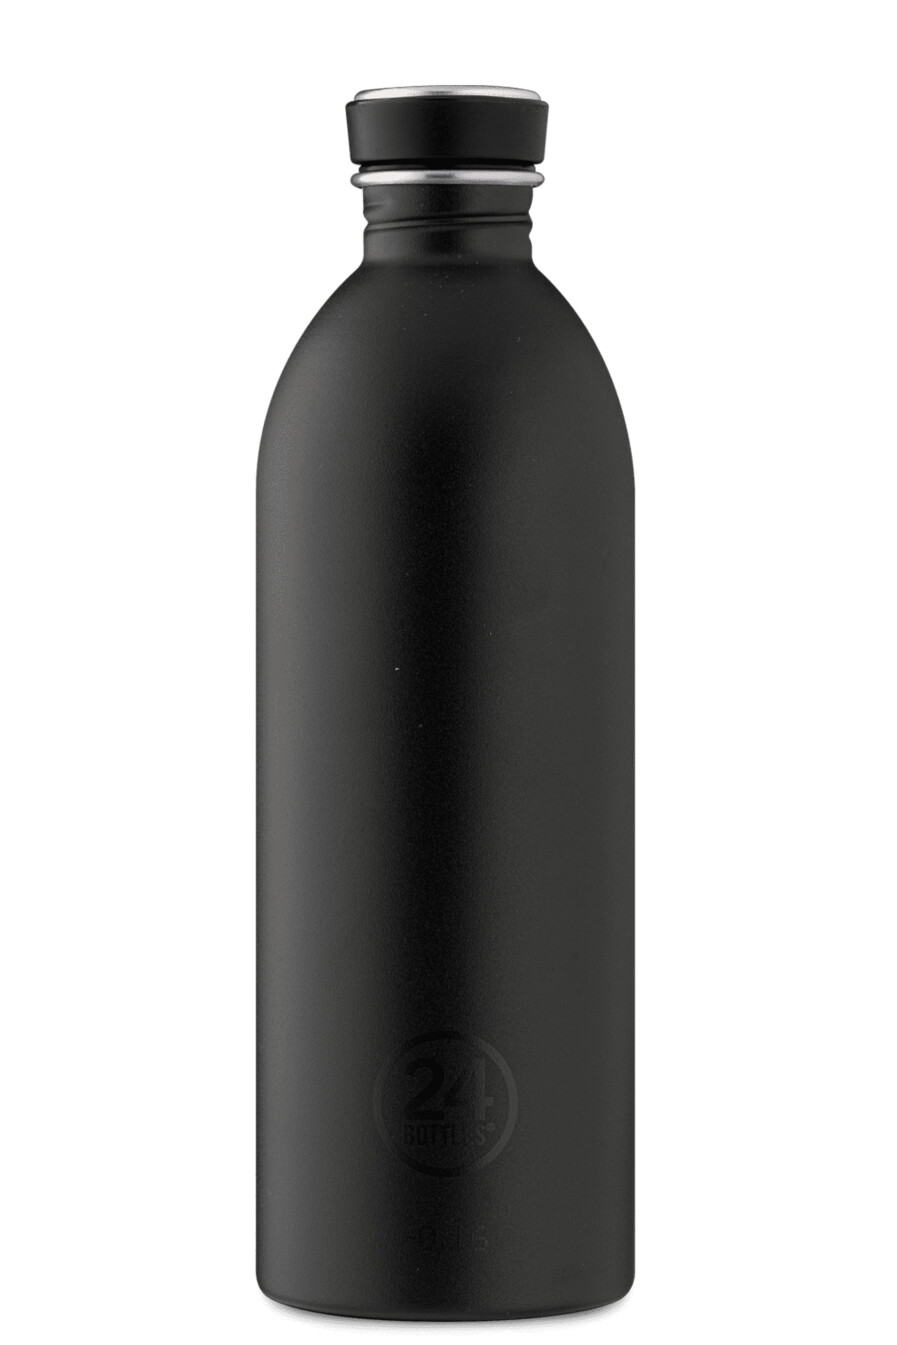 24Bottles Urban Bottle 1000ml | Stone Tuxedo Black